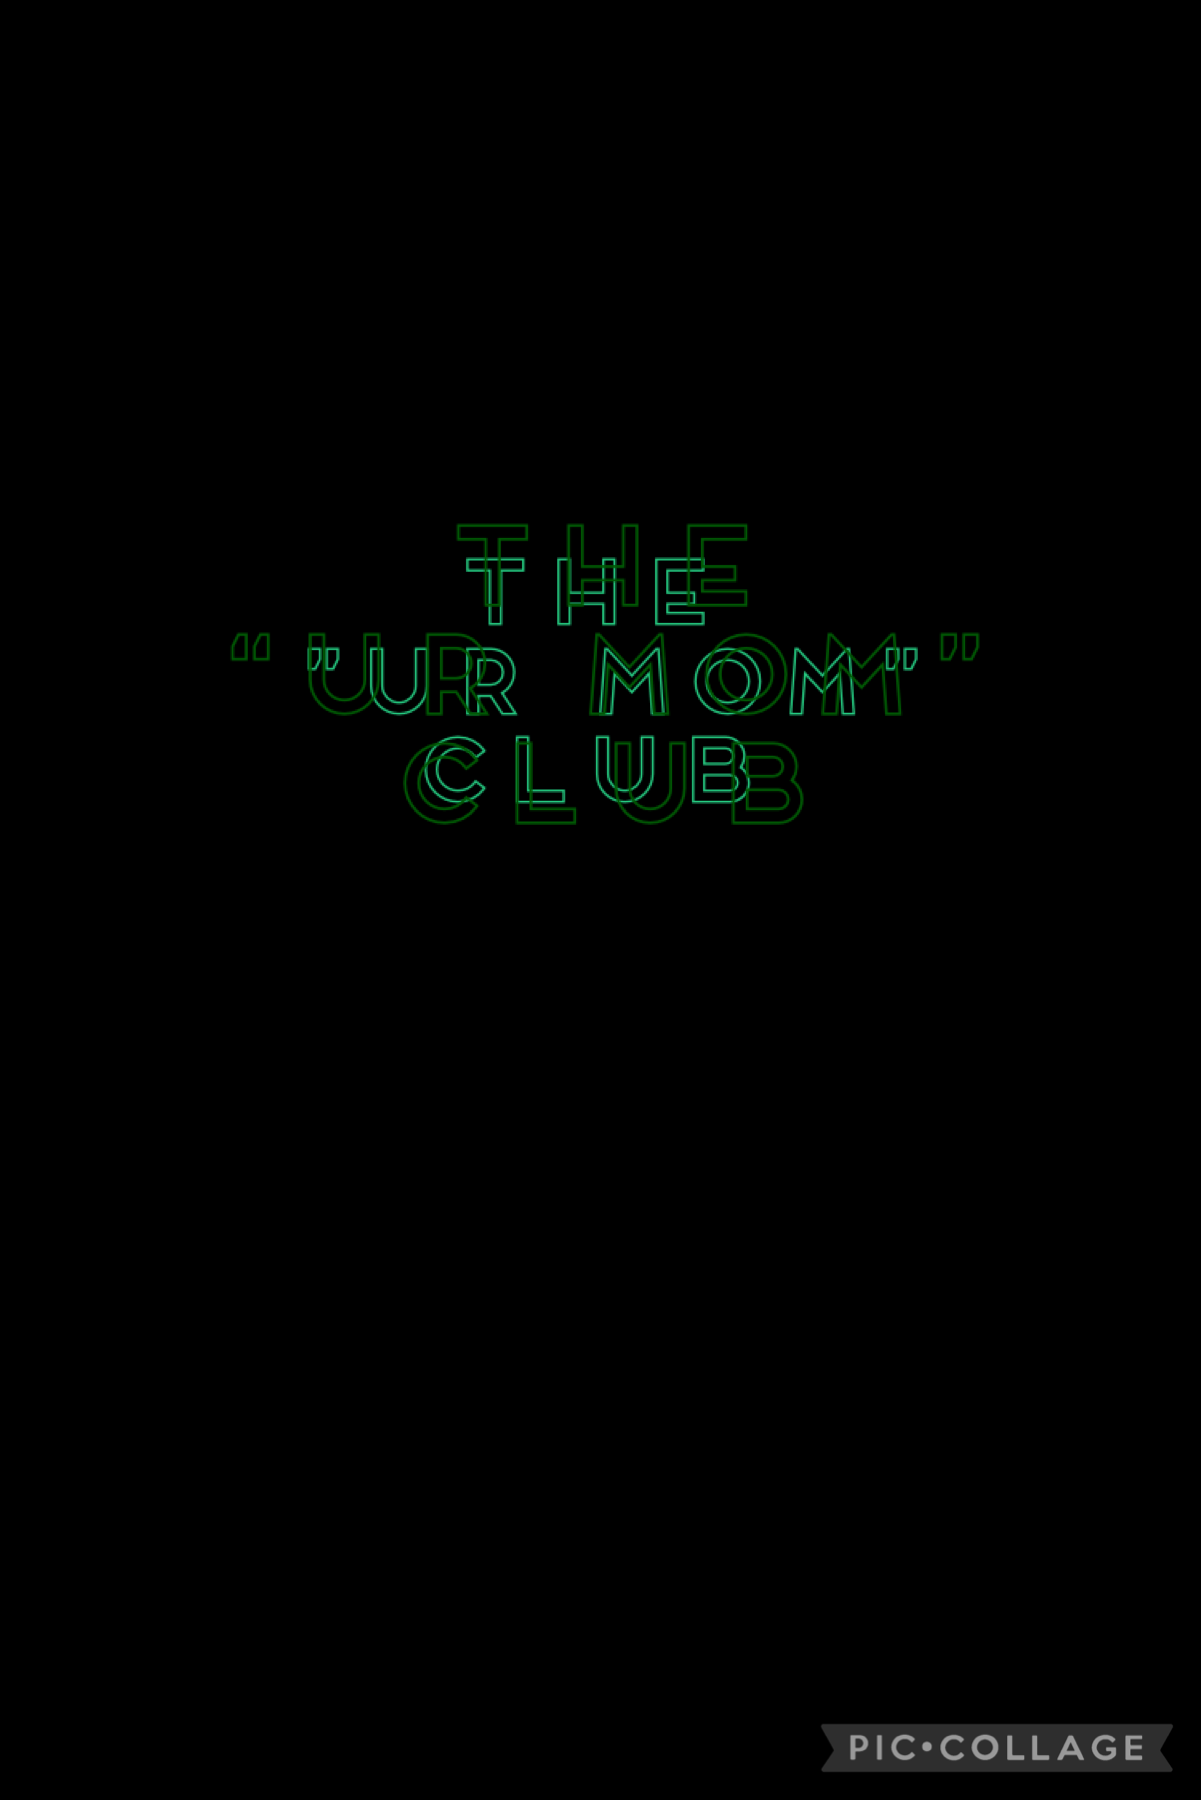 The ur mom club! 